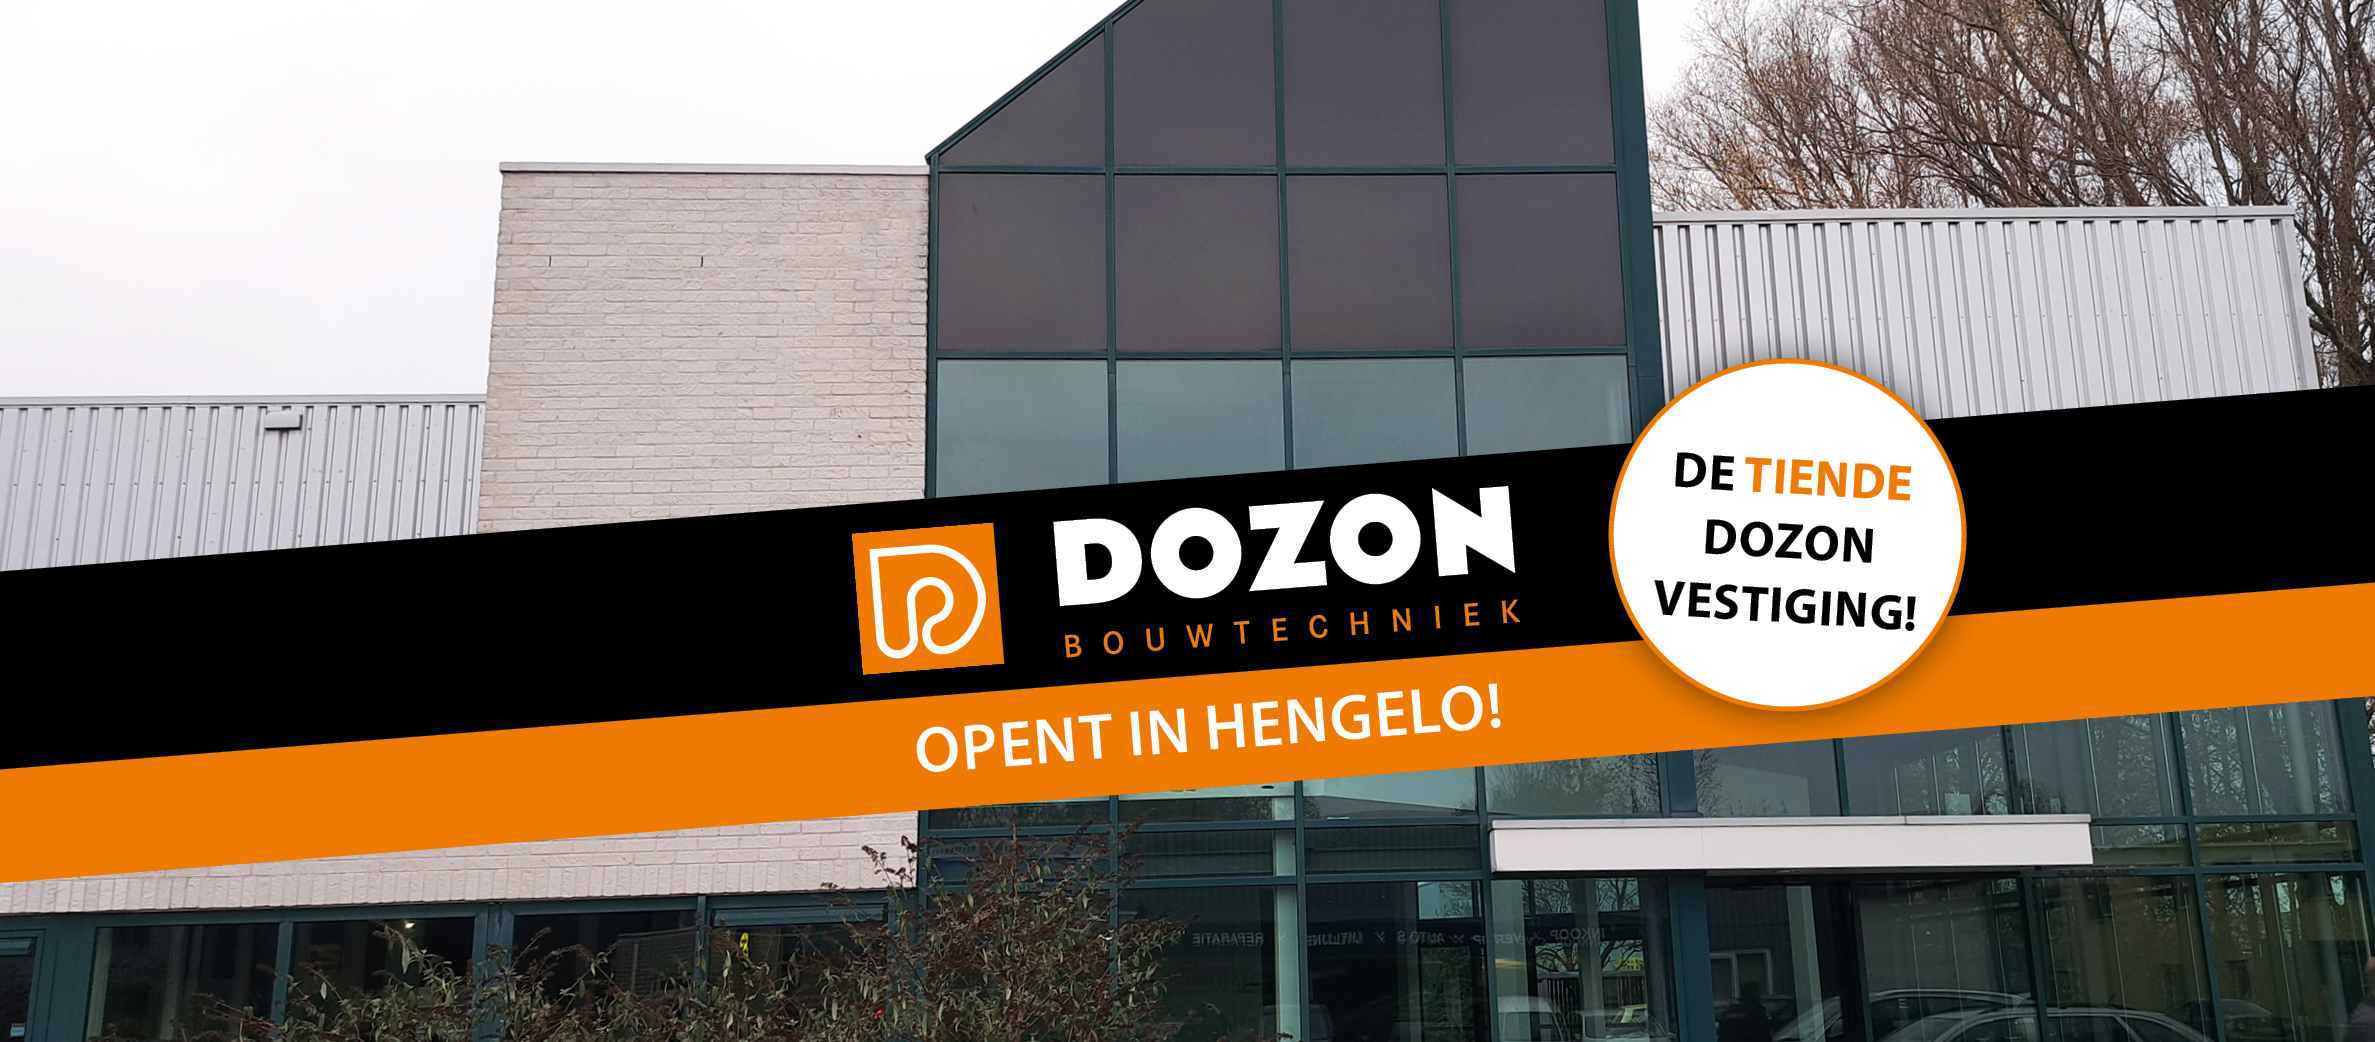 Dozon opent vestiging in Hengelo!